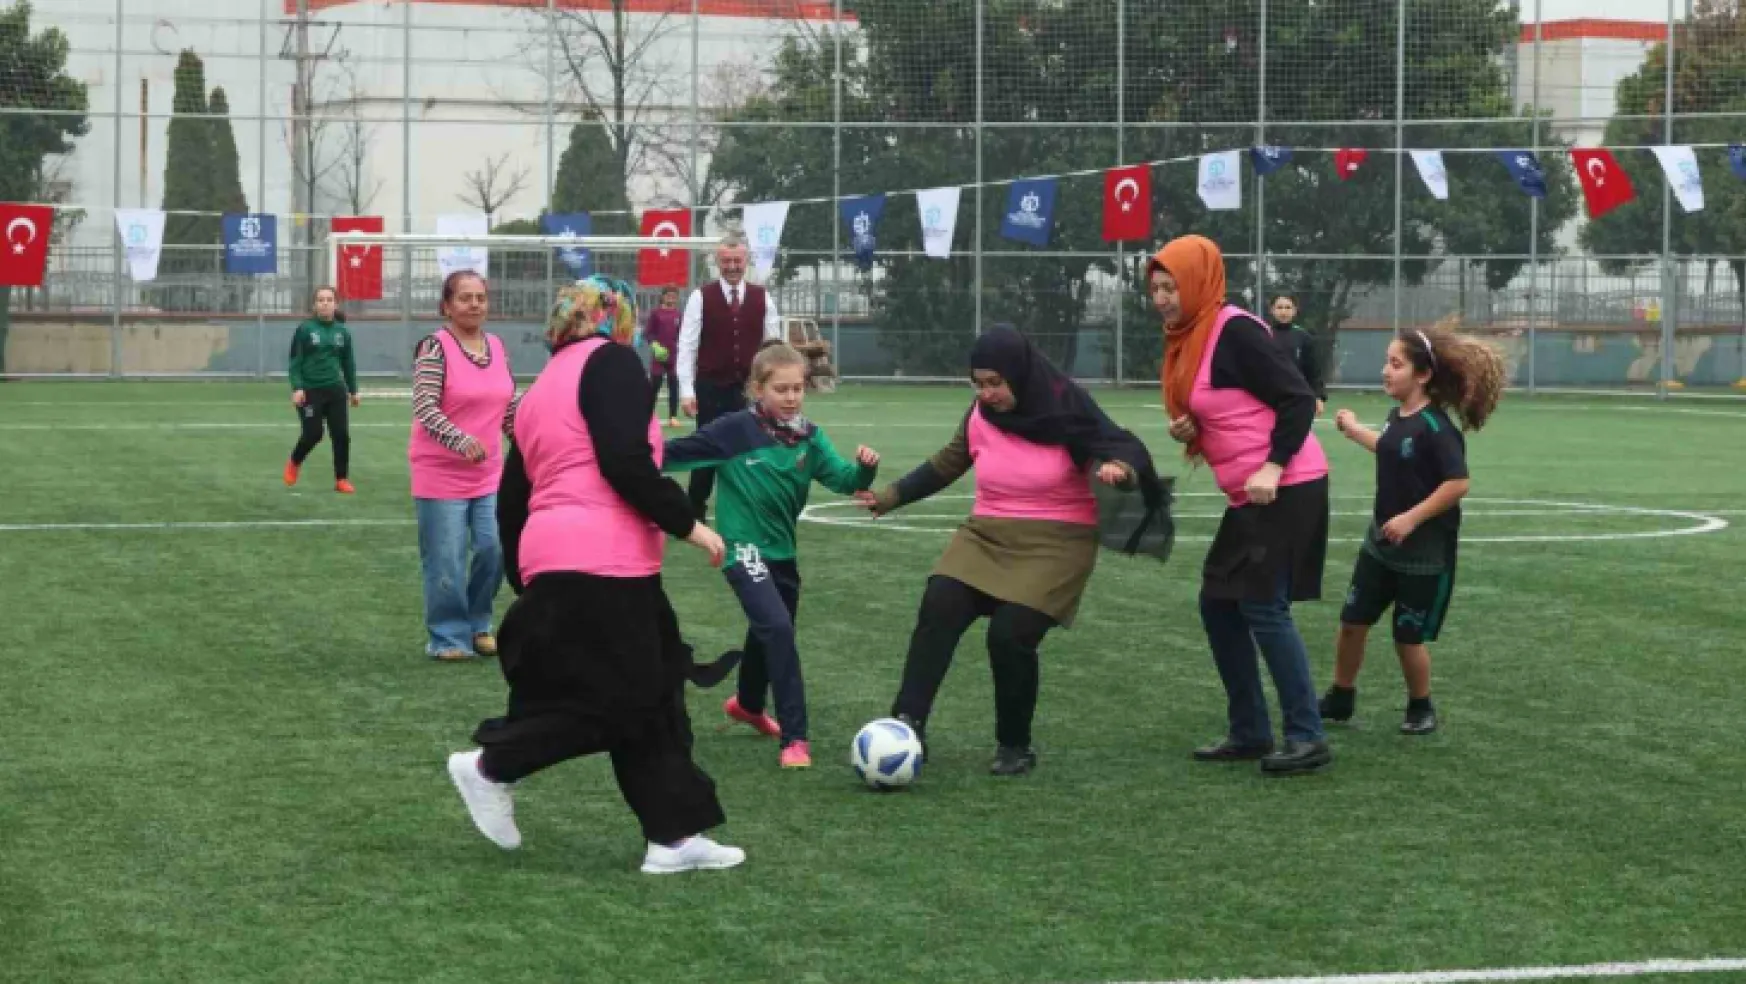 Anneler ve kızları futbol maçında karşı karşıya